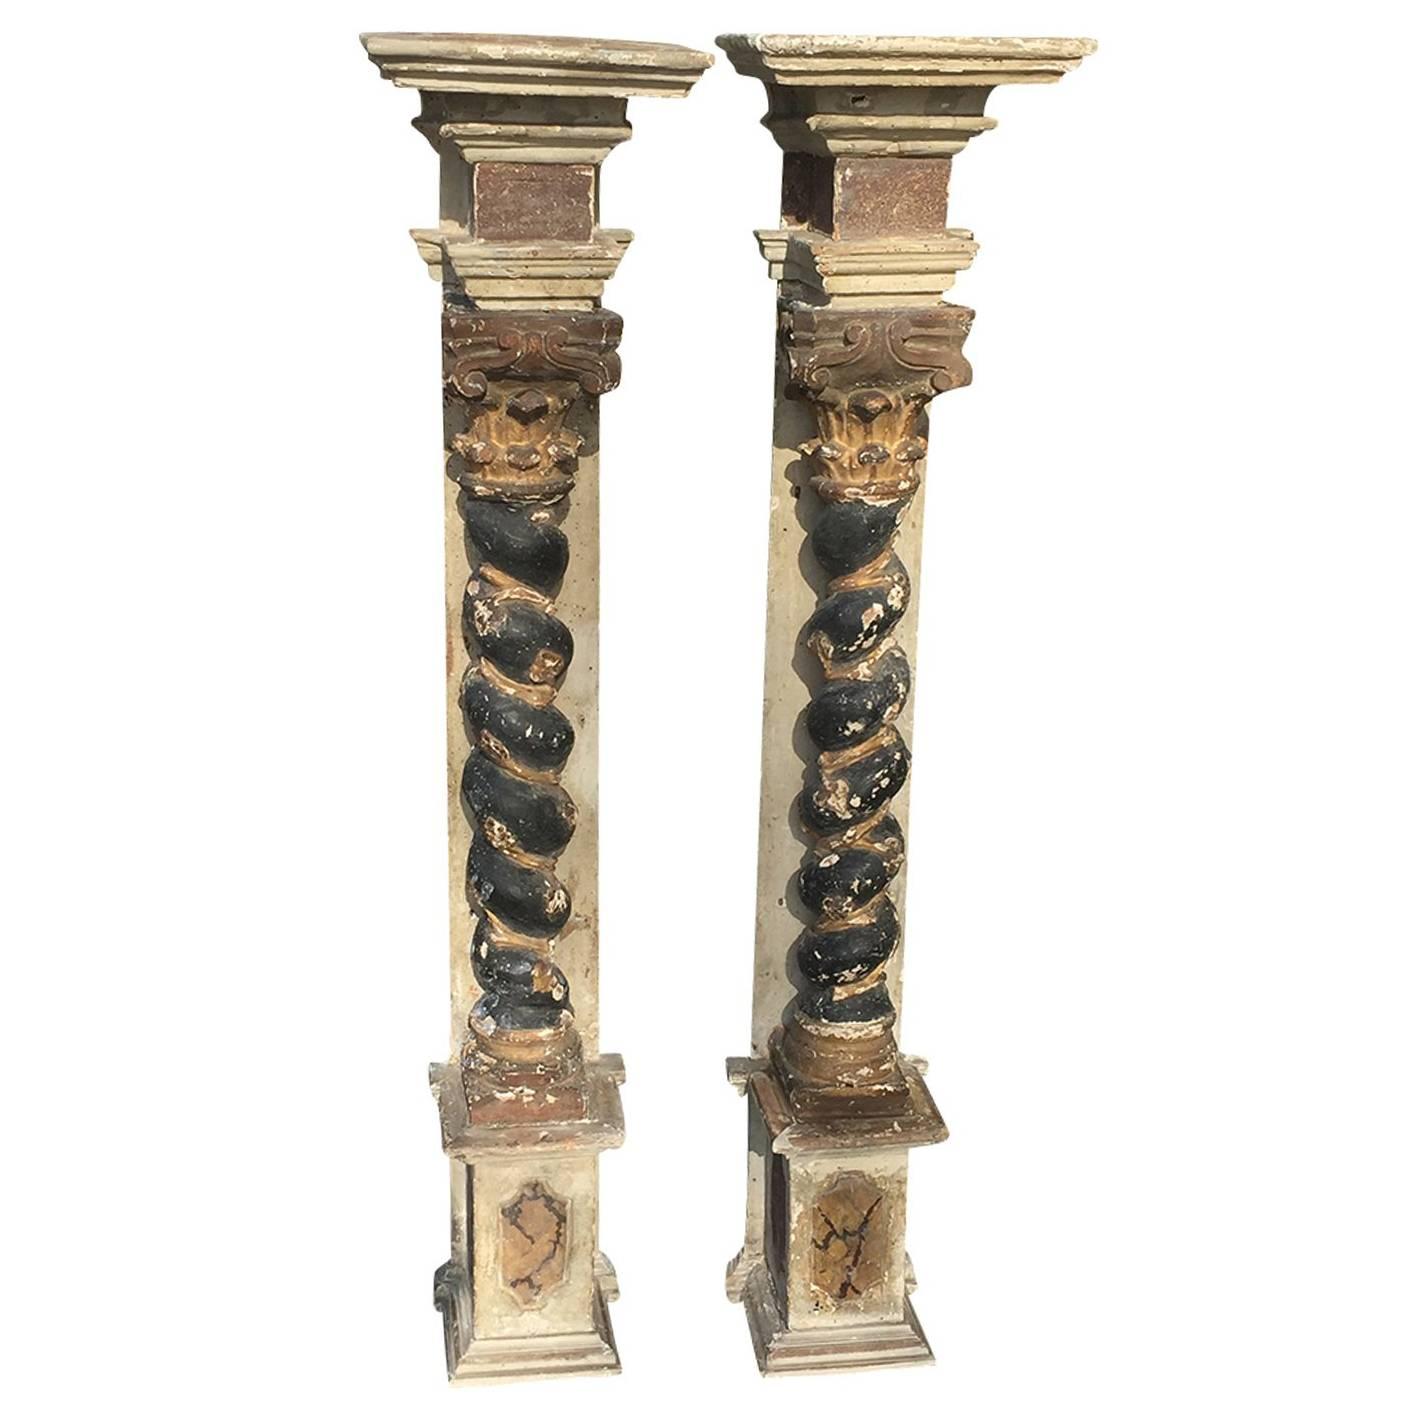 Pair of 17th-18th Century Italian Baroque Columns